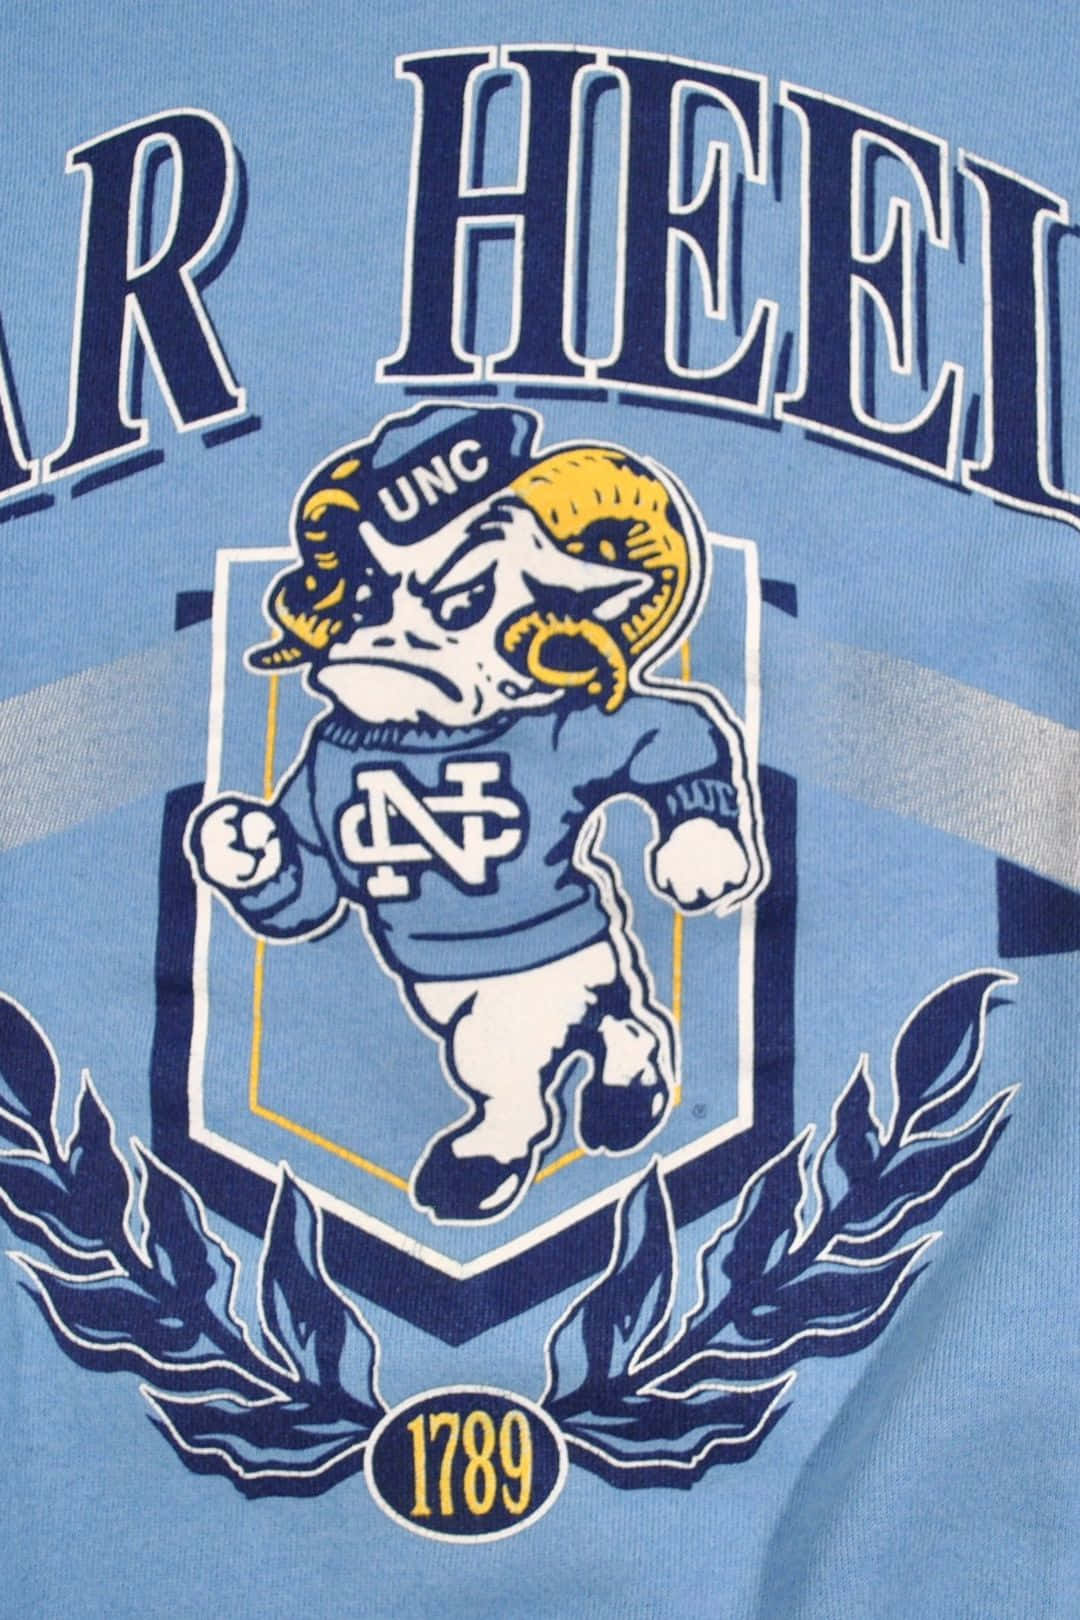 Download North Carolina Tar Heels T-shirt Wallpaper | Wallpapers.com